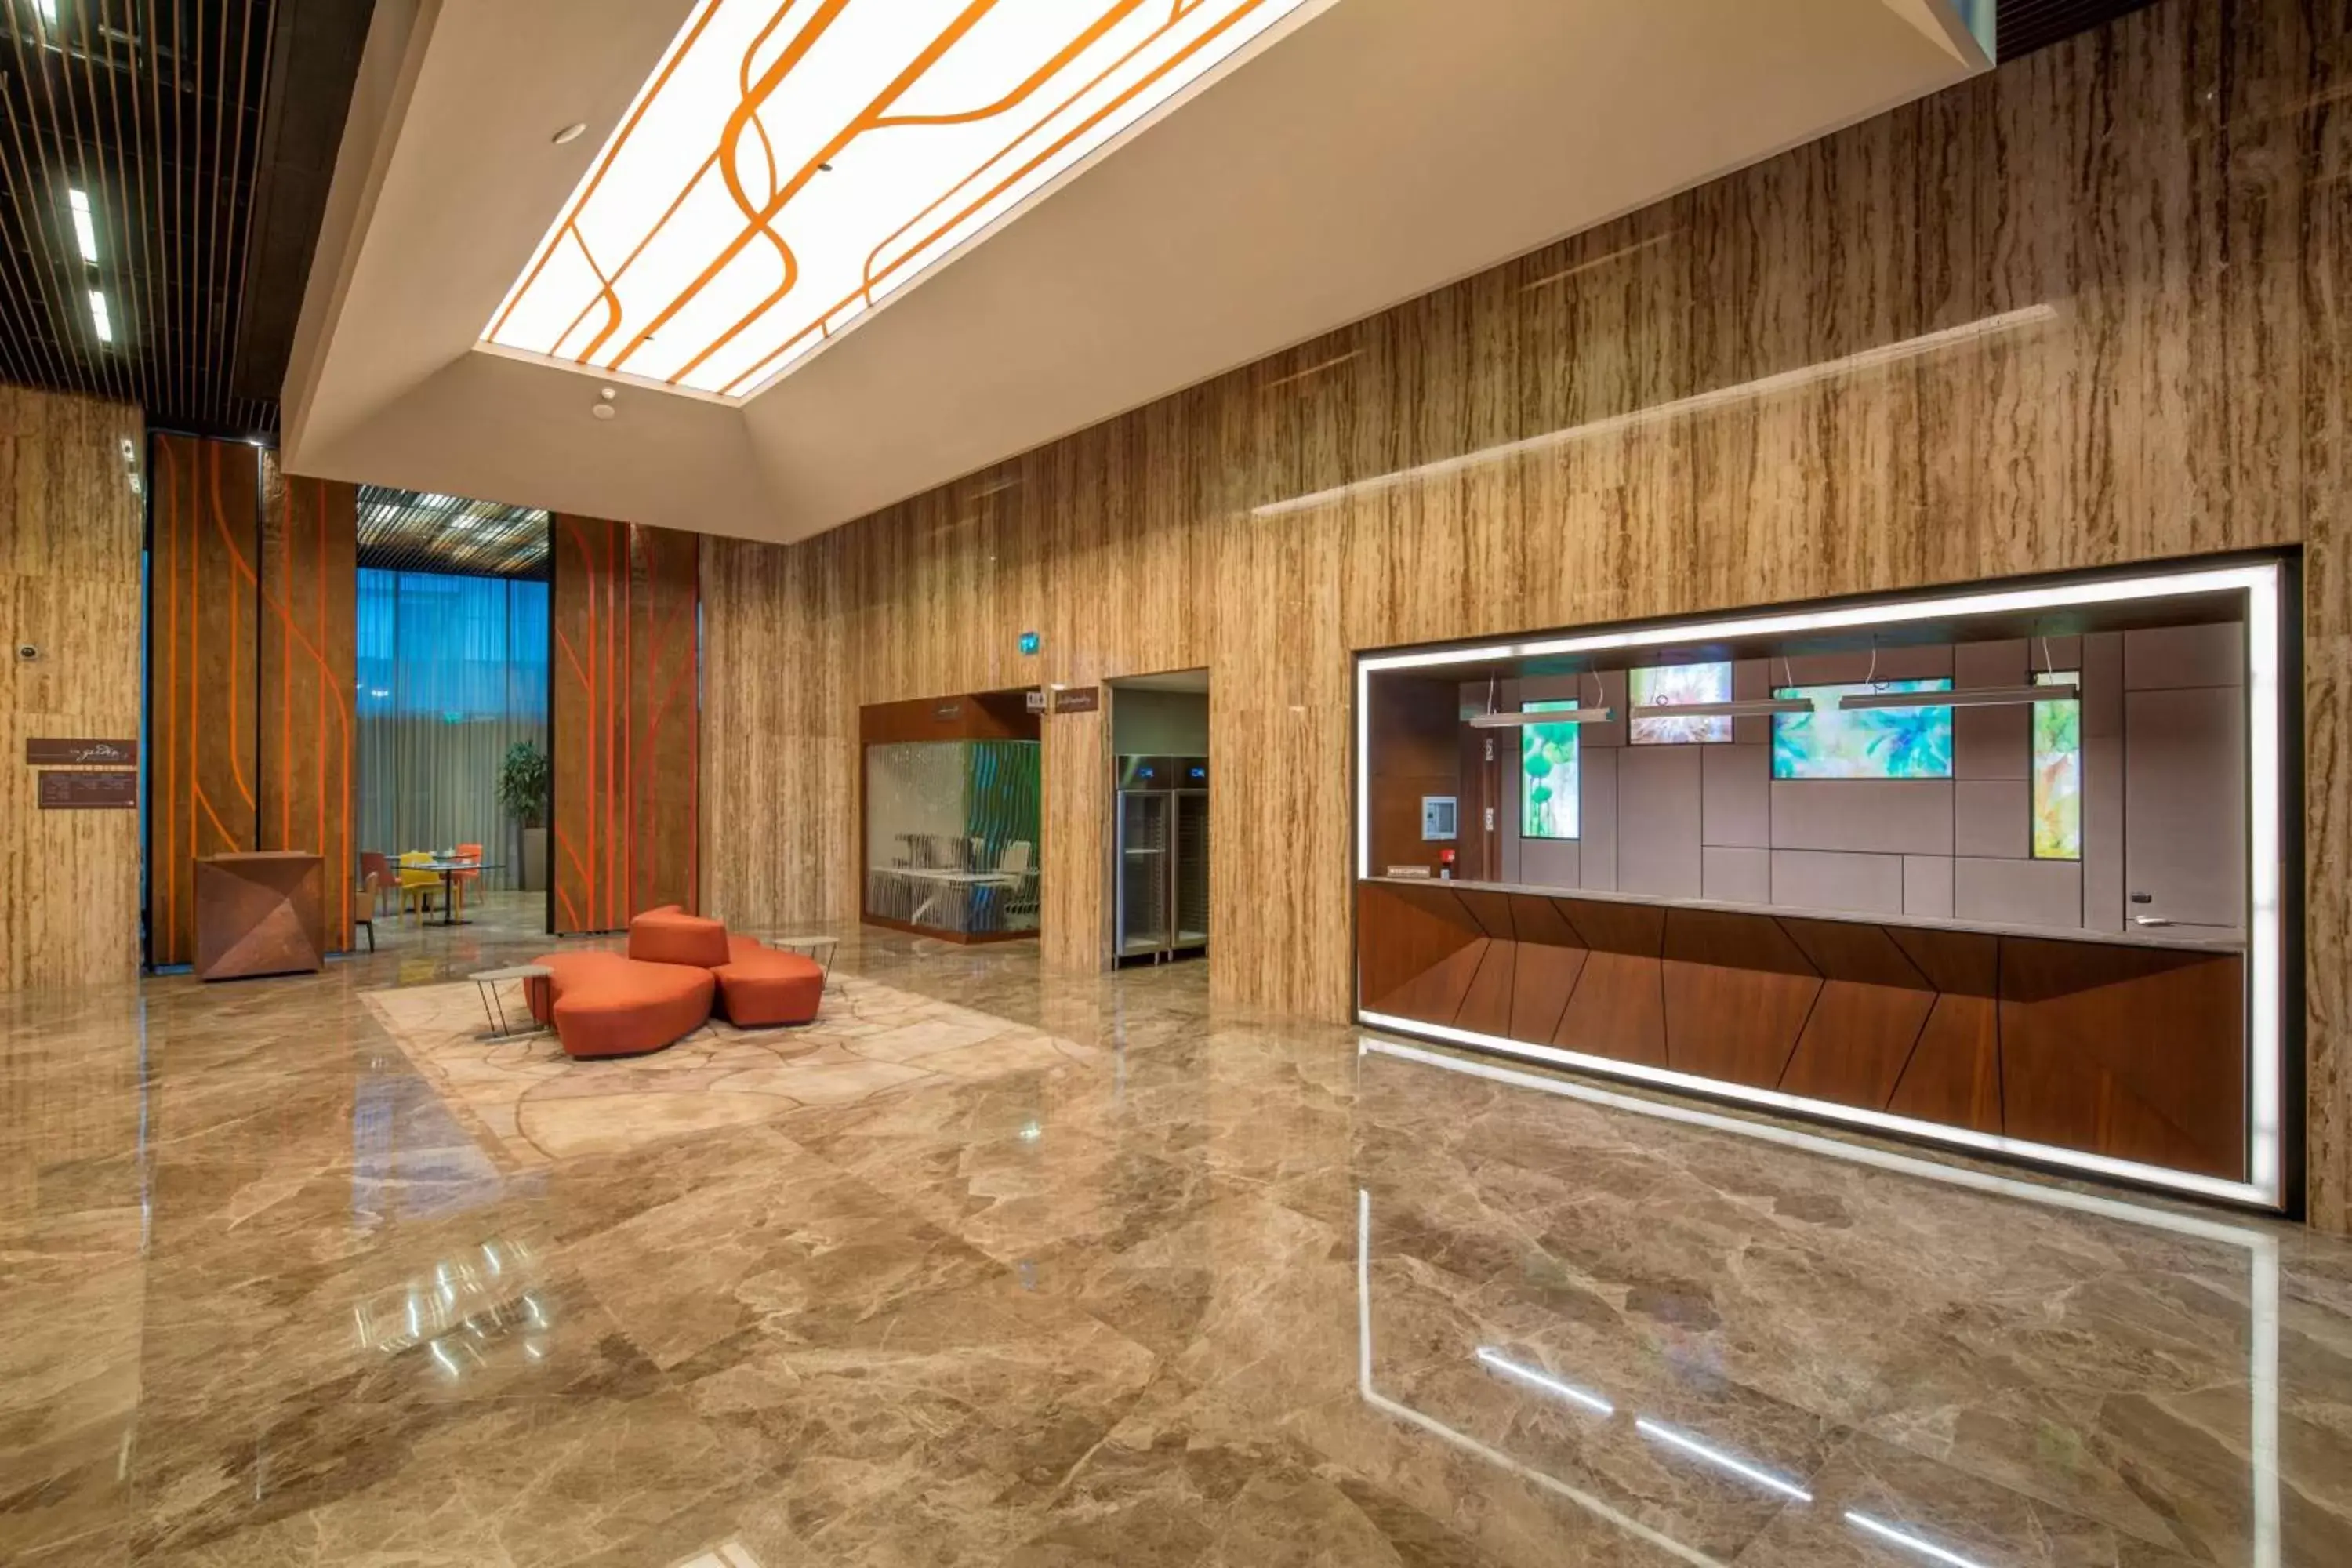 Lobby or reception, Lobby/Reception in Hilton Garden Inn Istanbul Atatürk Airport